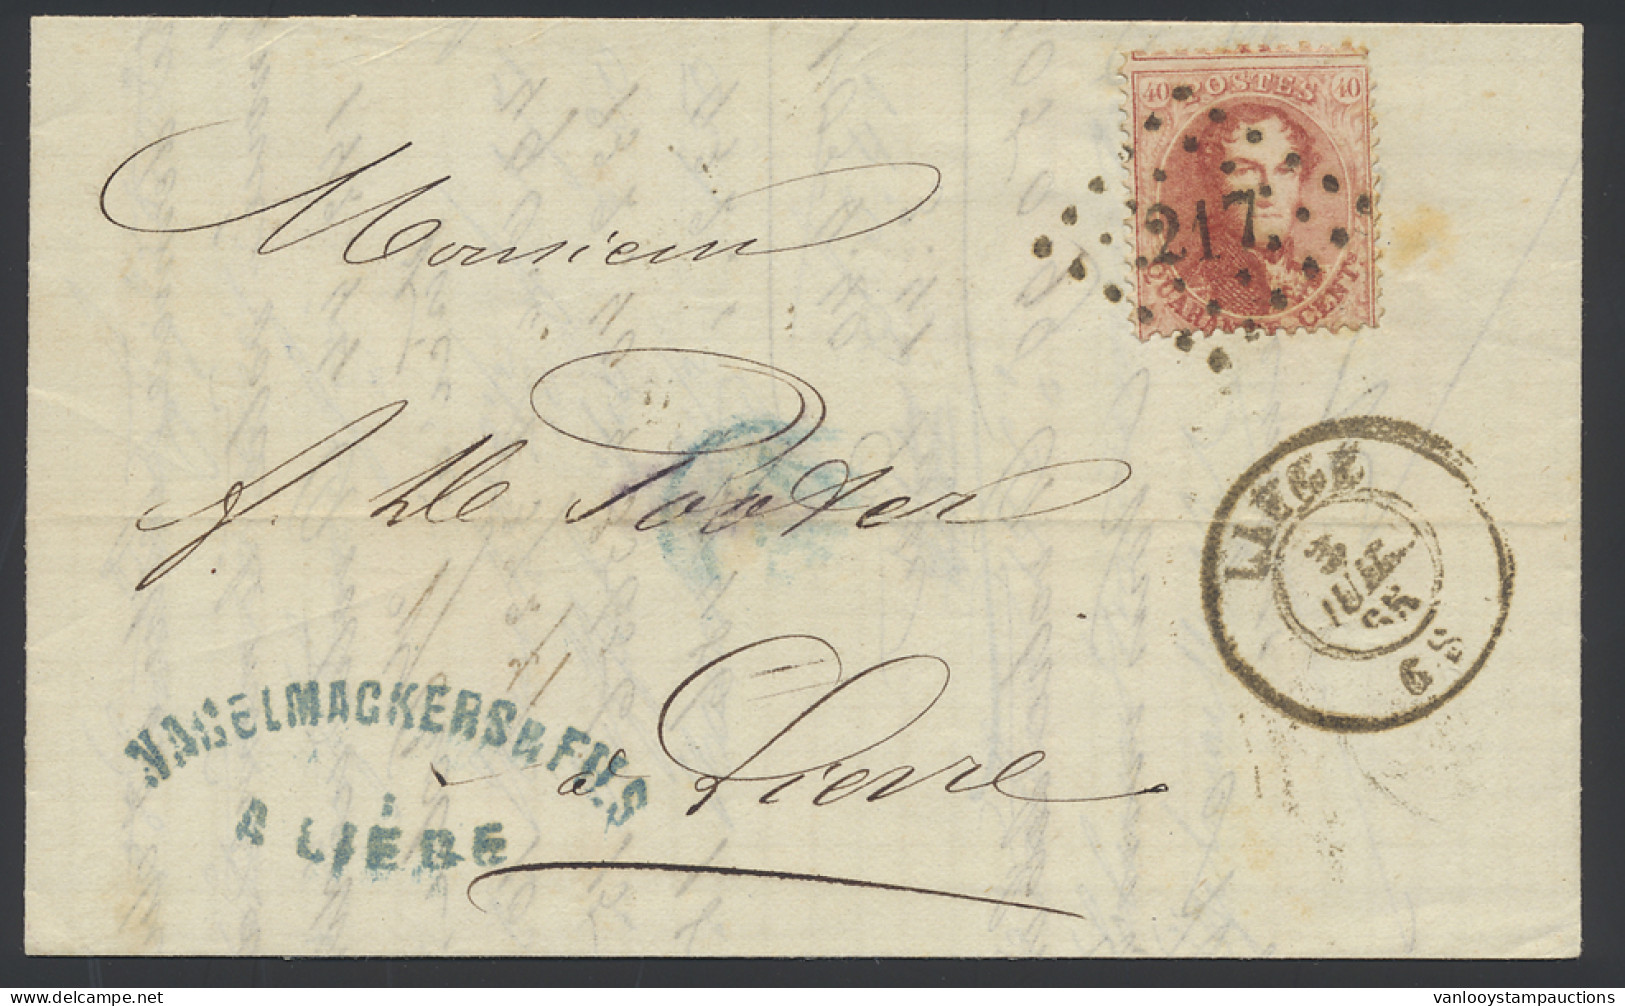 1865 N° 16 40c. Karmijnroze Op Brief, Puntstempel 217 Liège, Dd. 3 Juli 65, Naar Lierre, Dubbele Port Binnenland (geen G - 1863-1864 Medallions (13/16)